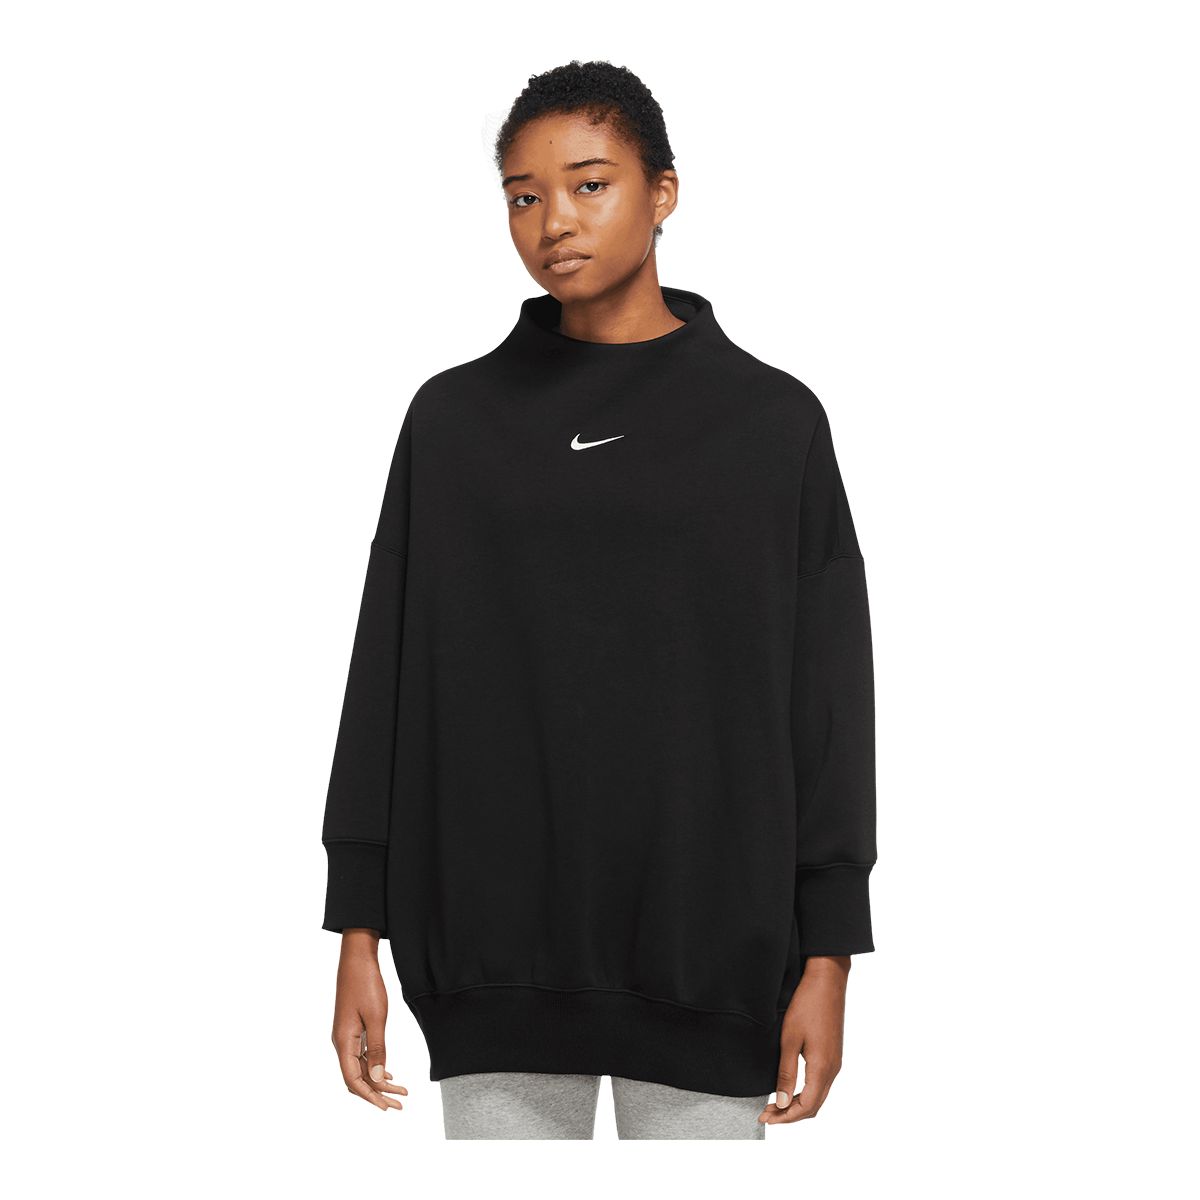 Nike Women's Phoenix Mock Neck Fleece Sweatshirt Tunic, Oversized